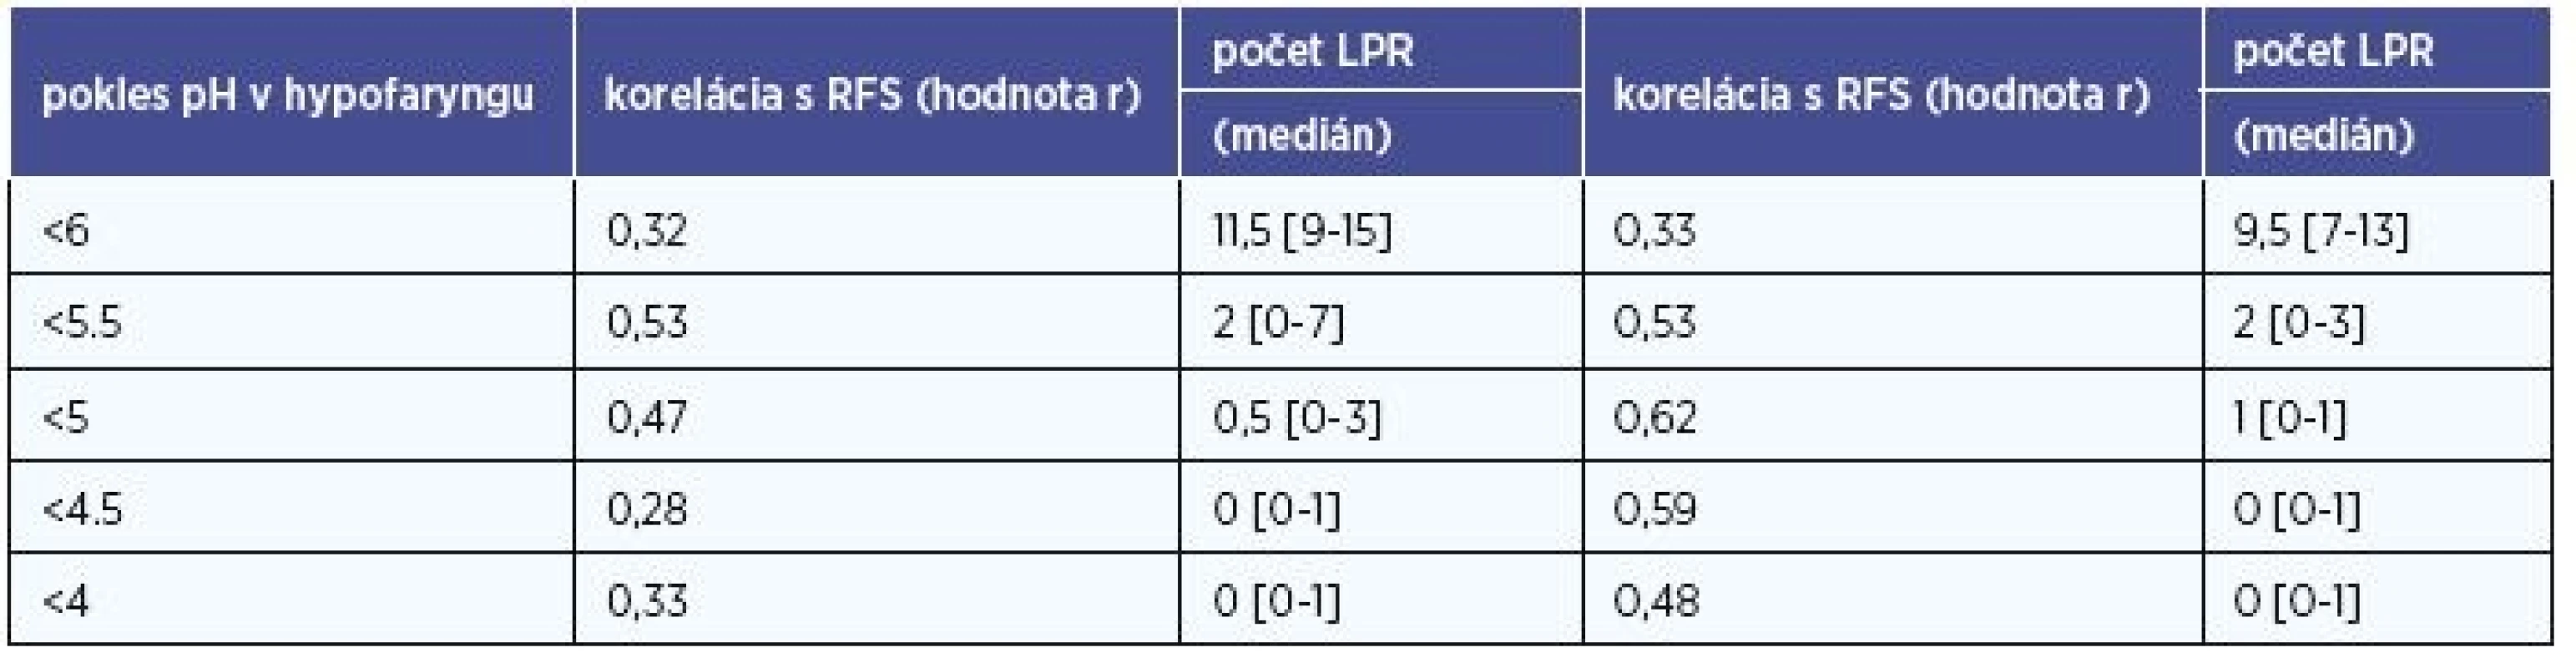 Počet LPR epizód podľa „miery kyslosti“ v hypofaryngu (pH< 6, 5,5, 5, 4,5, 4).